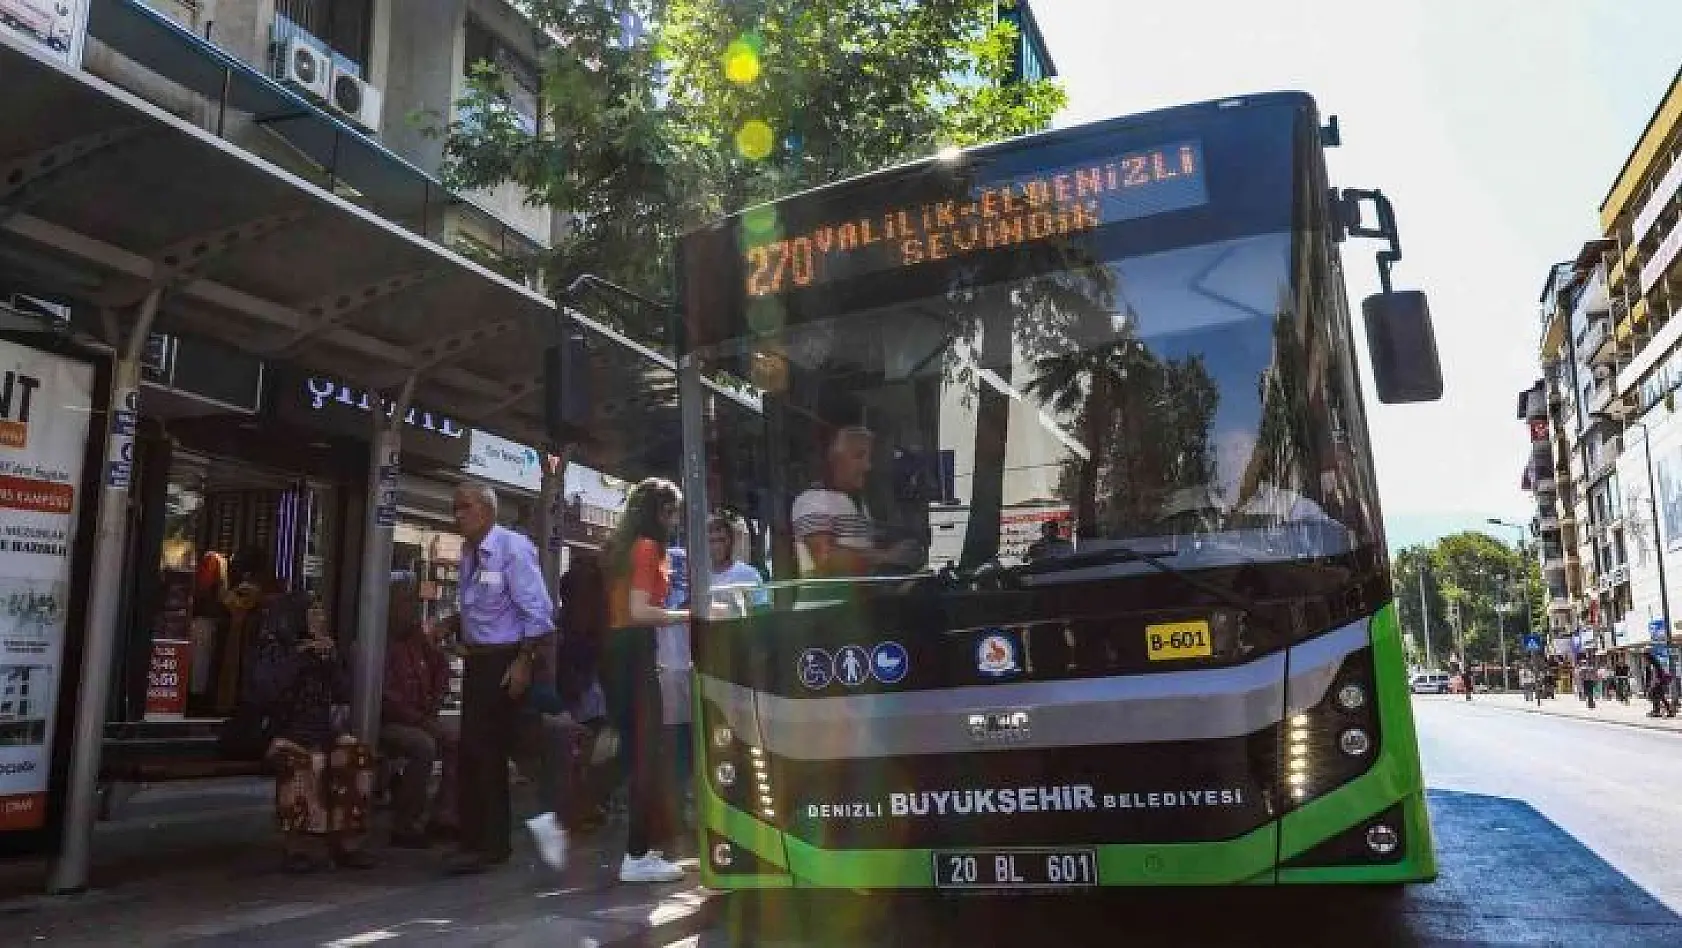 Denizli'de bayramda otobüsler ücretsiz